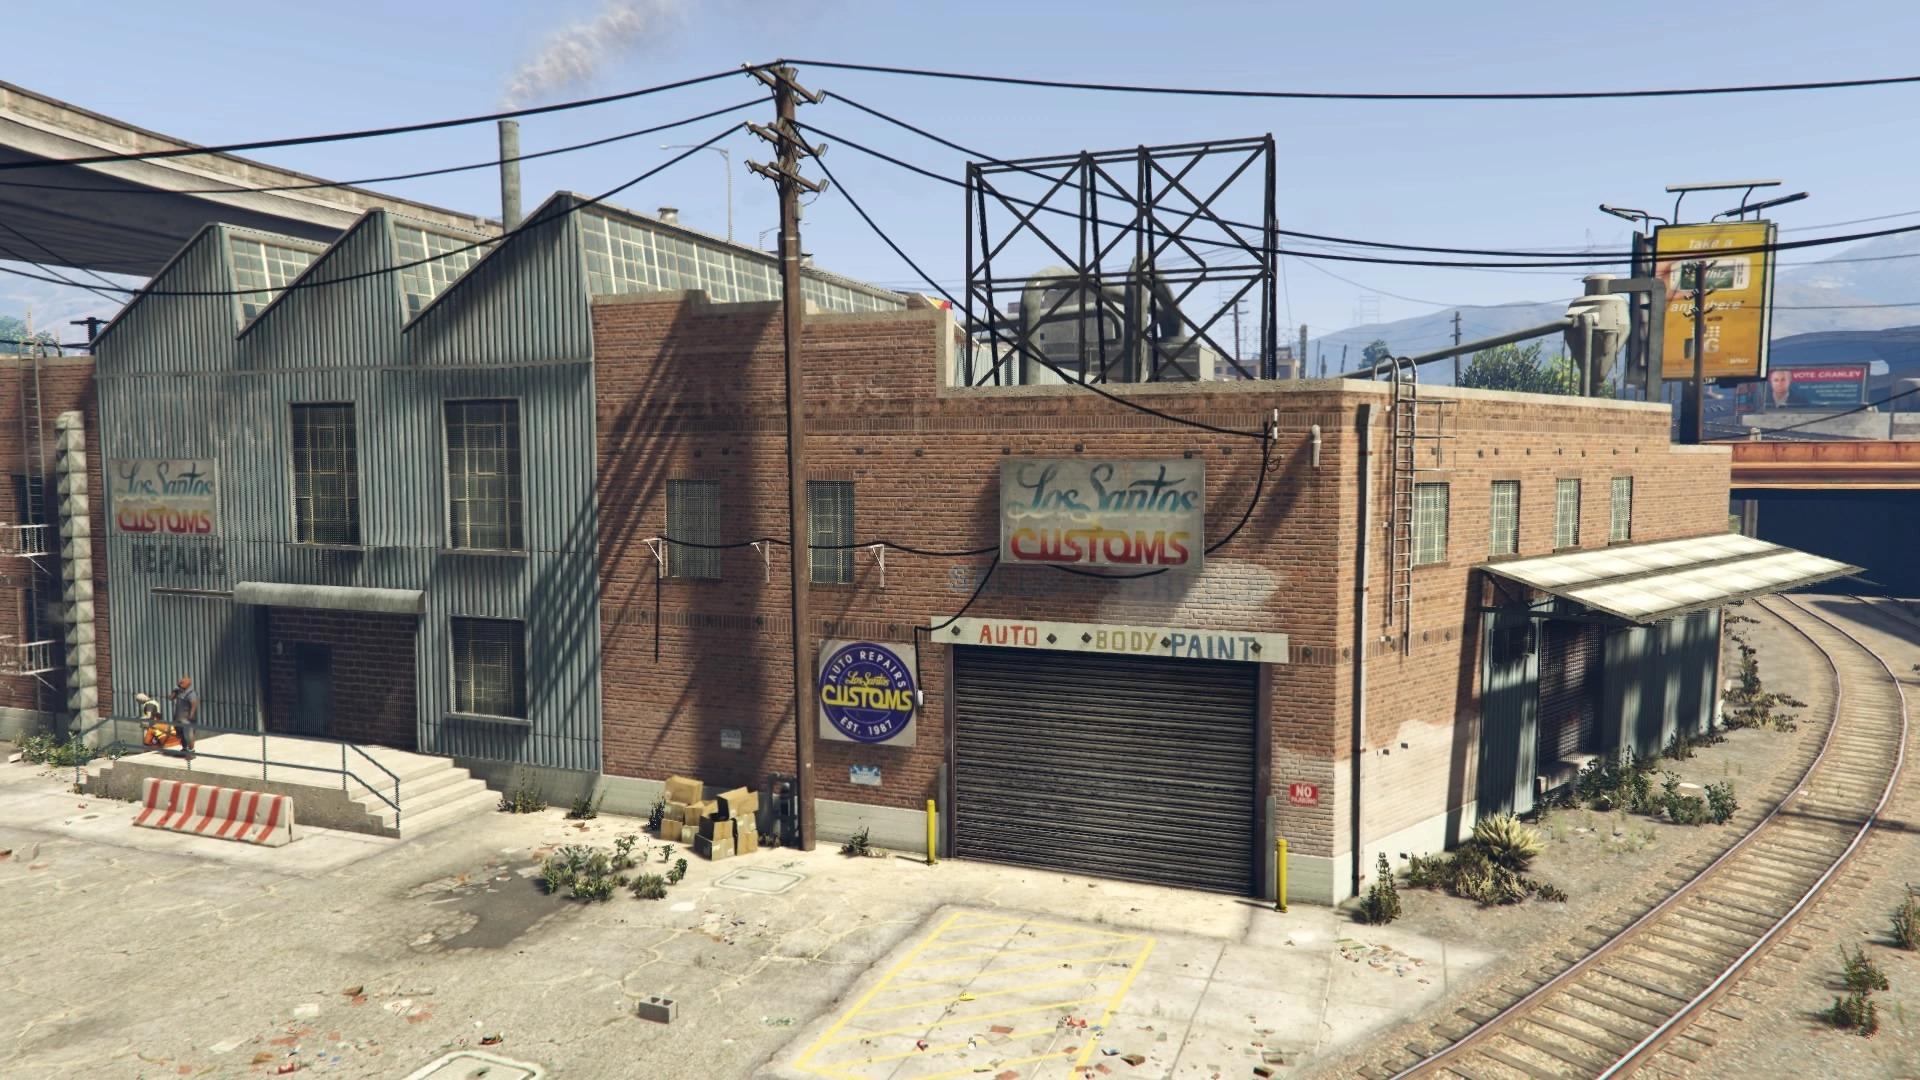 A Los Santos Customs shop in GTA 5.